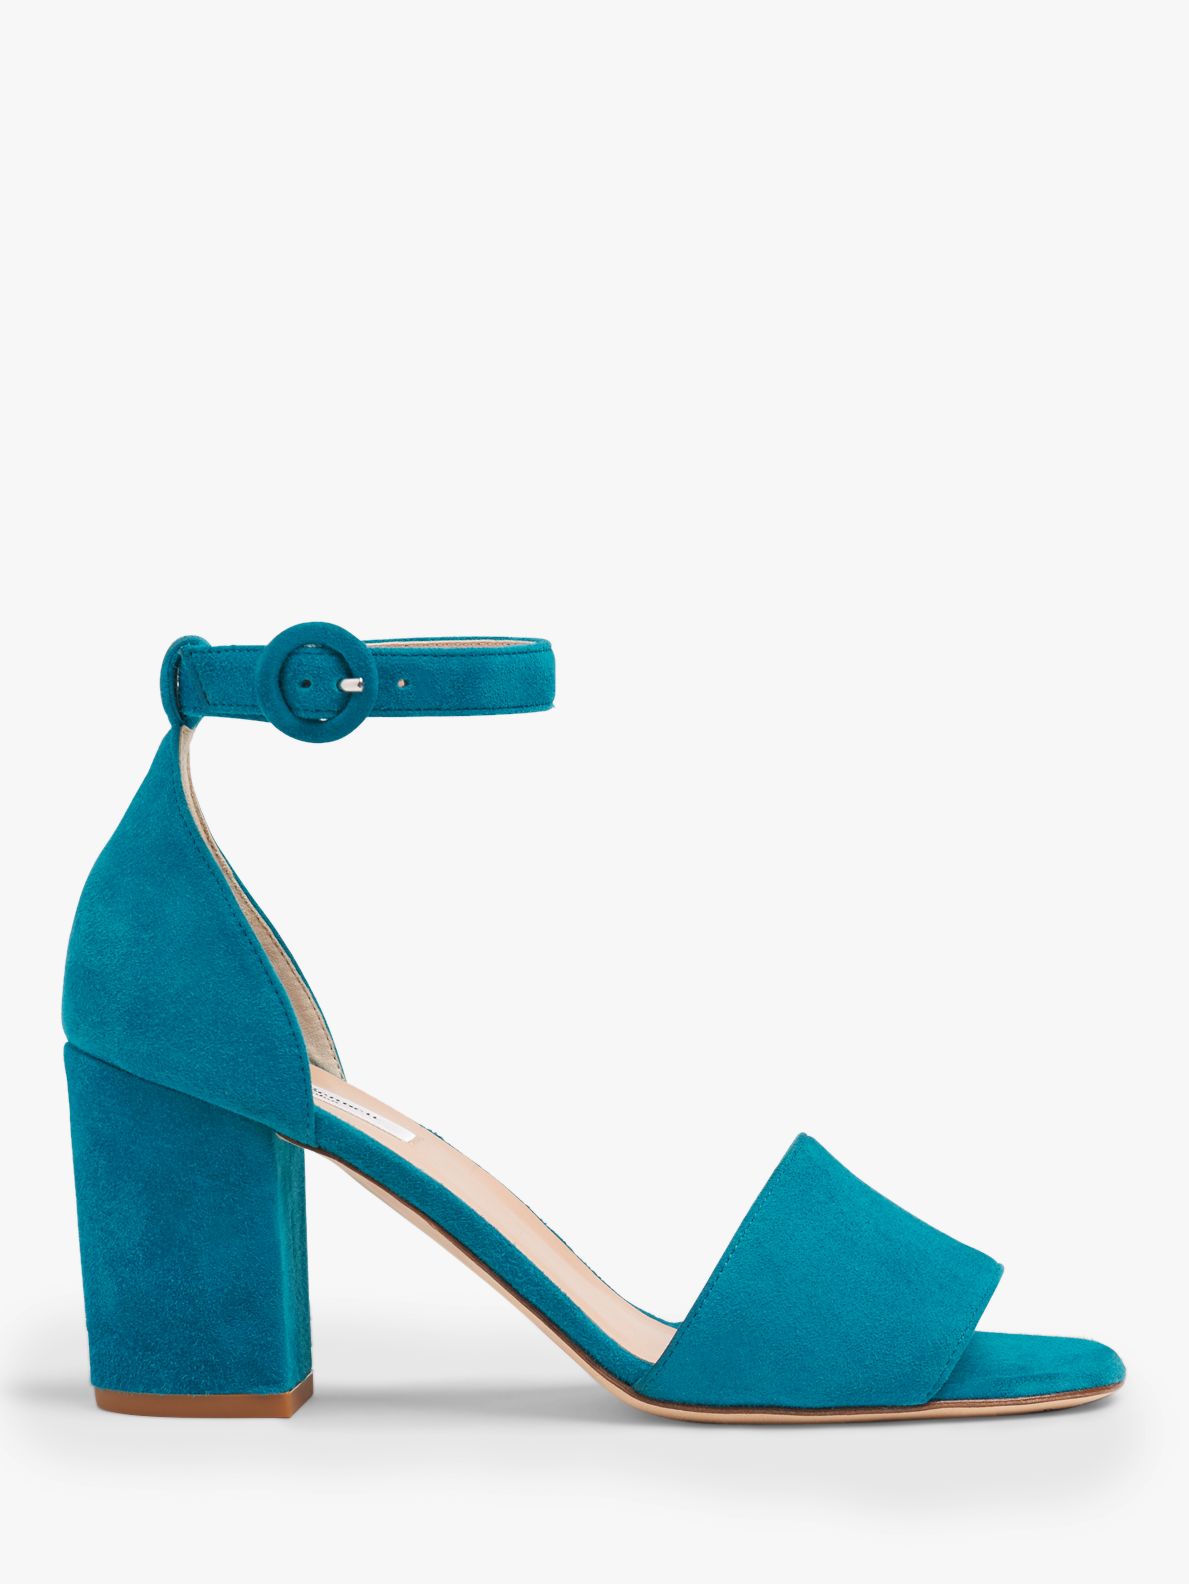 L.K.Bennett Hester Block Heel Sandals, Turquoise Suede